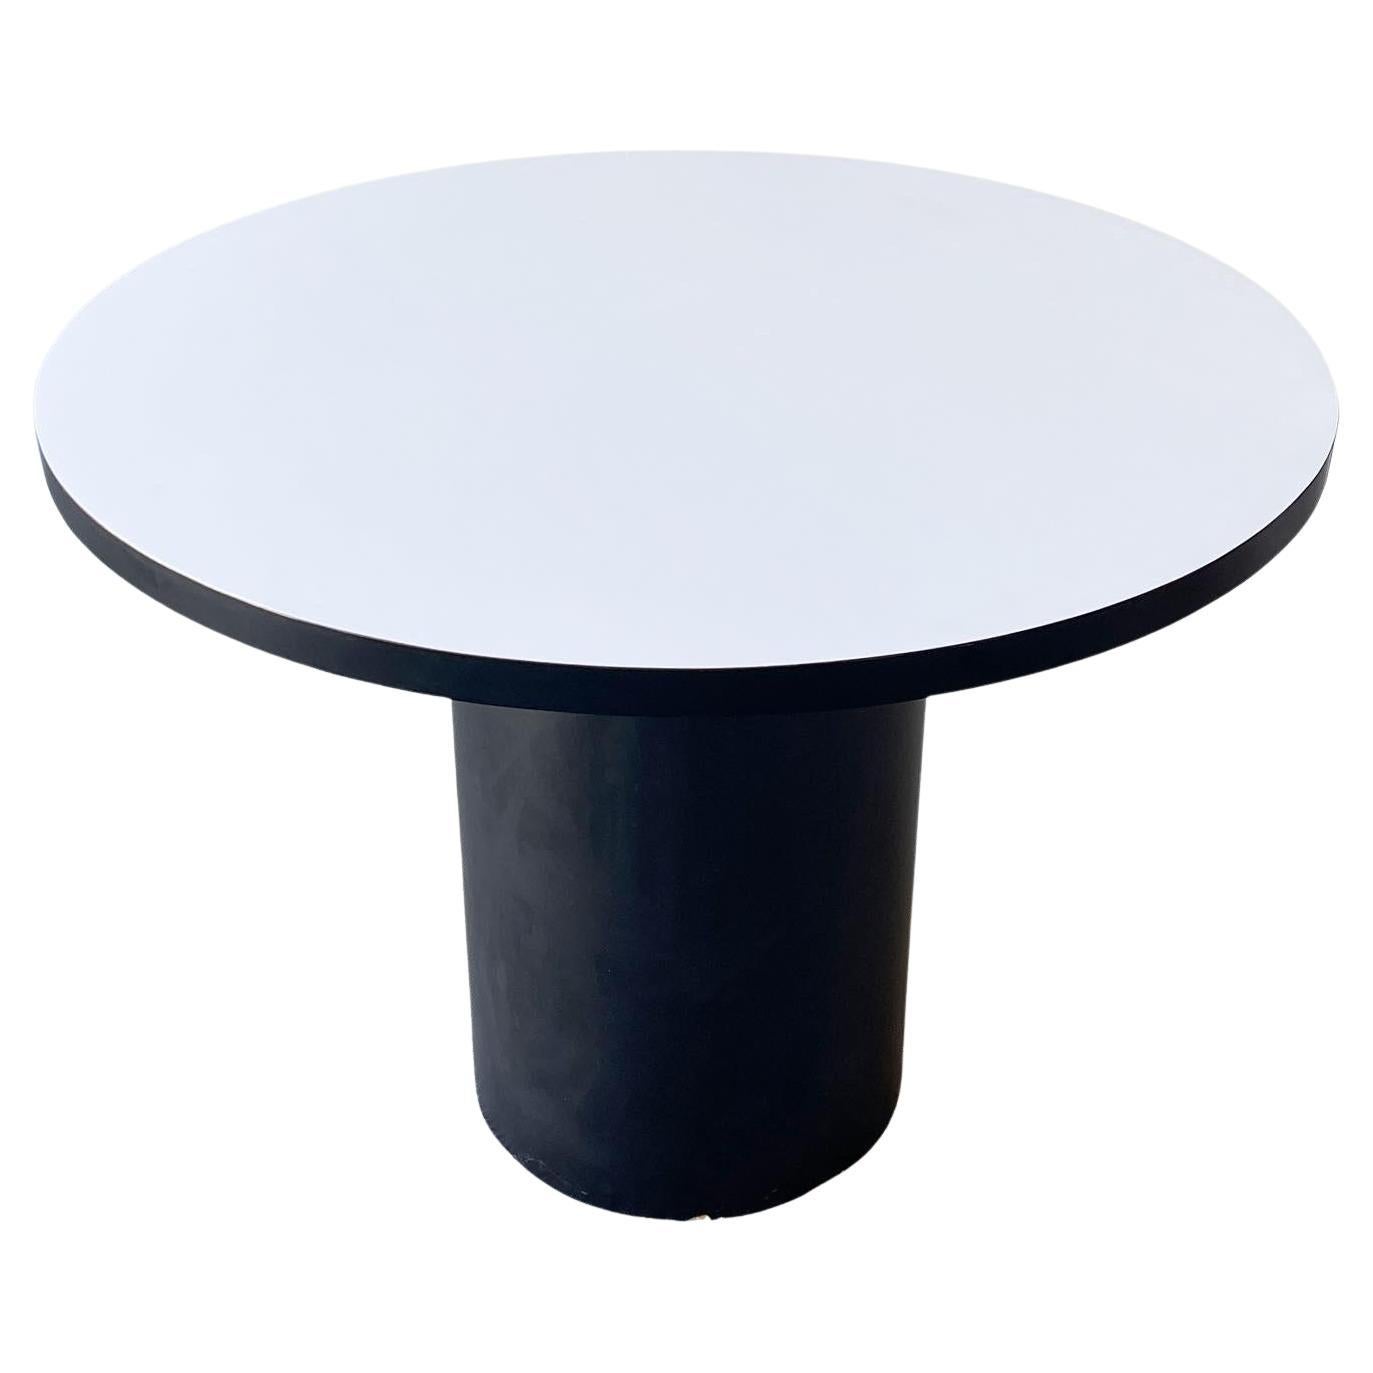 Postmodern Circular Black & White Laminate Dining Table